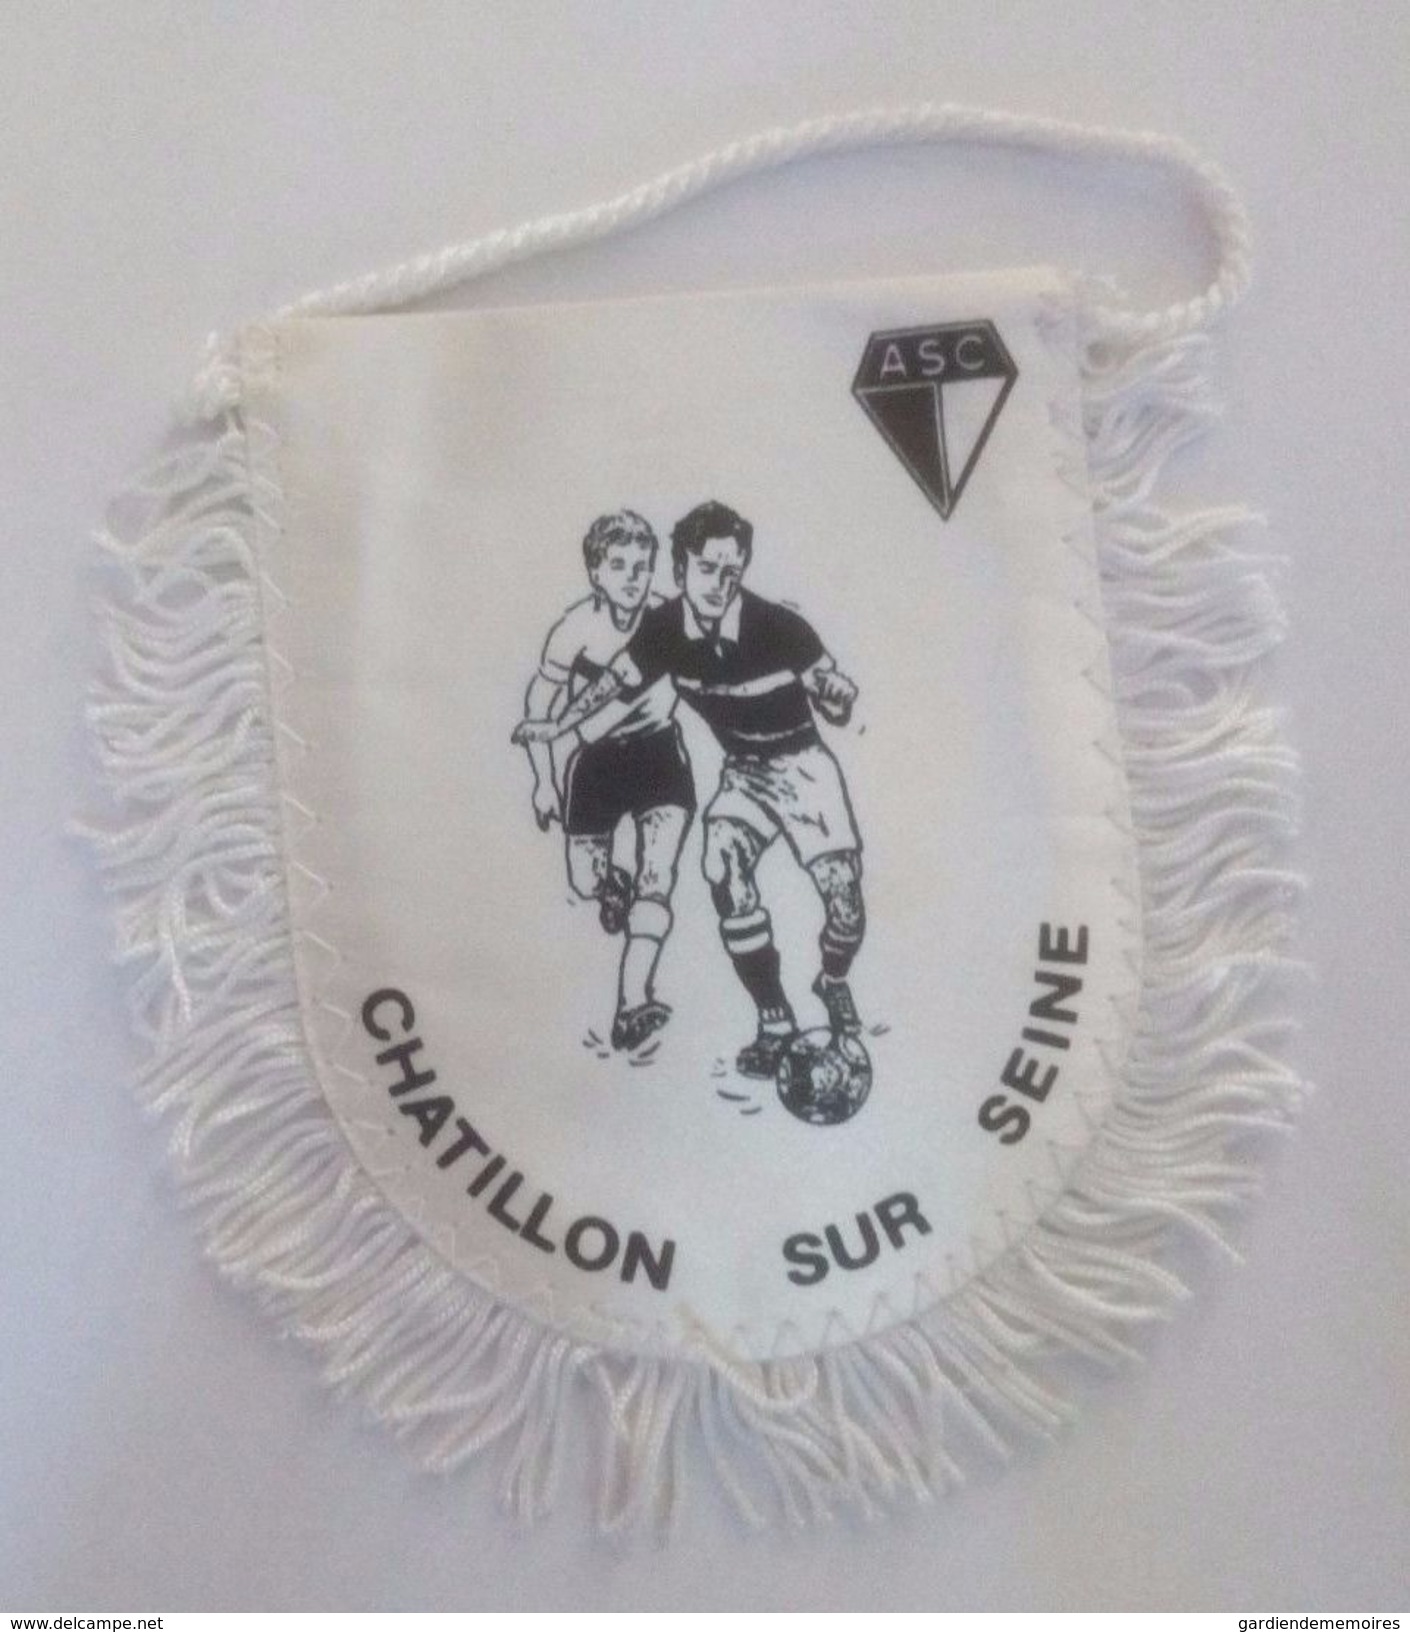 Ancien Fanion De Football - ASC Chatillon Sur Seine - Apparel, Souvenirs & Other